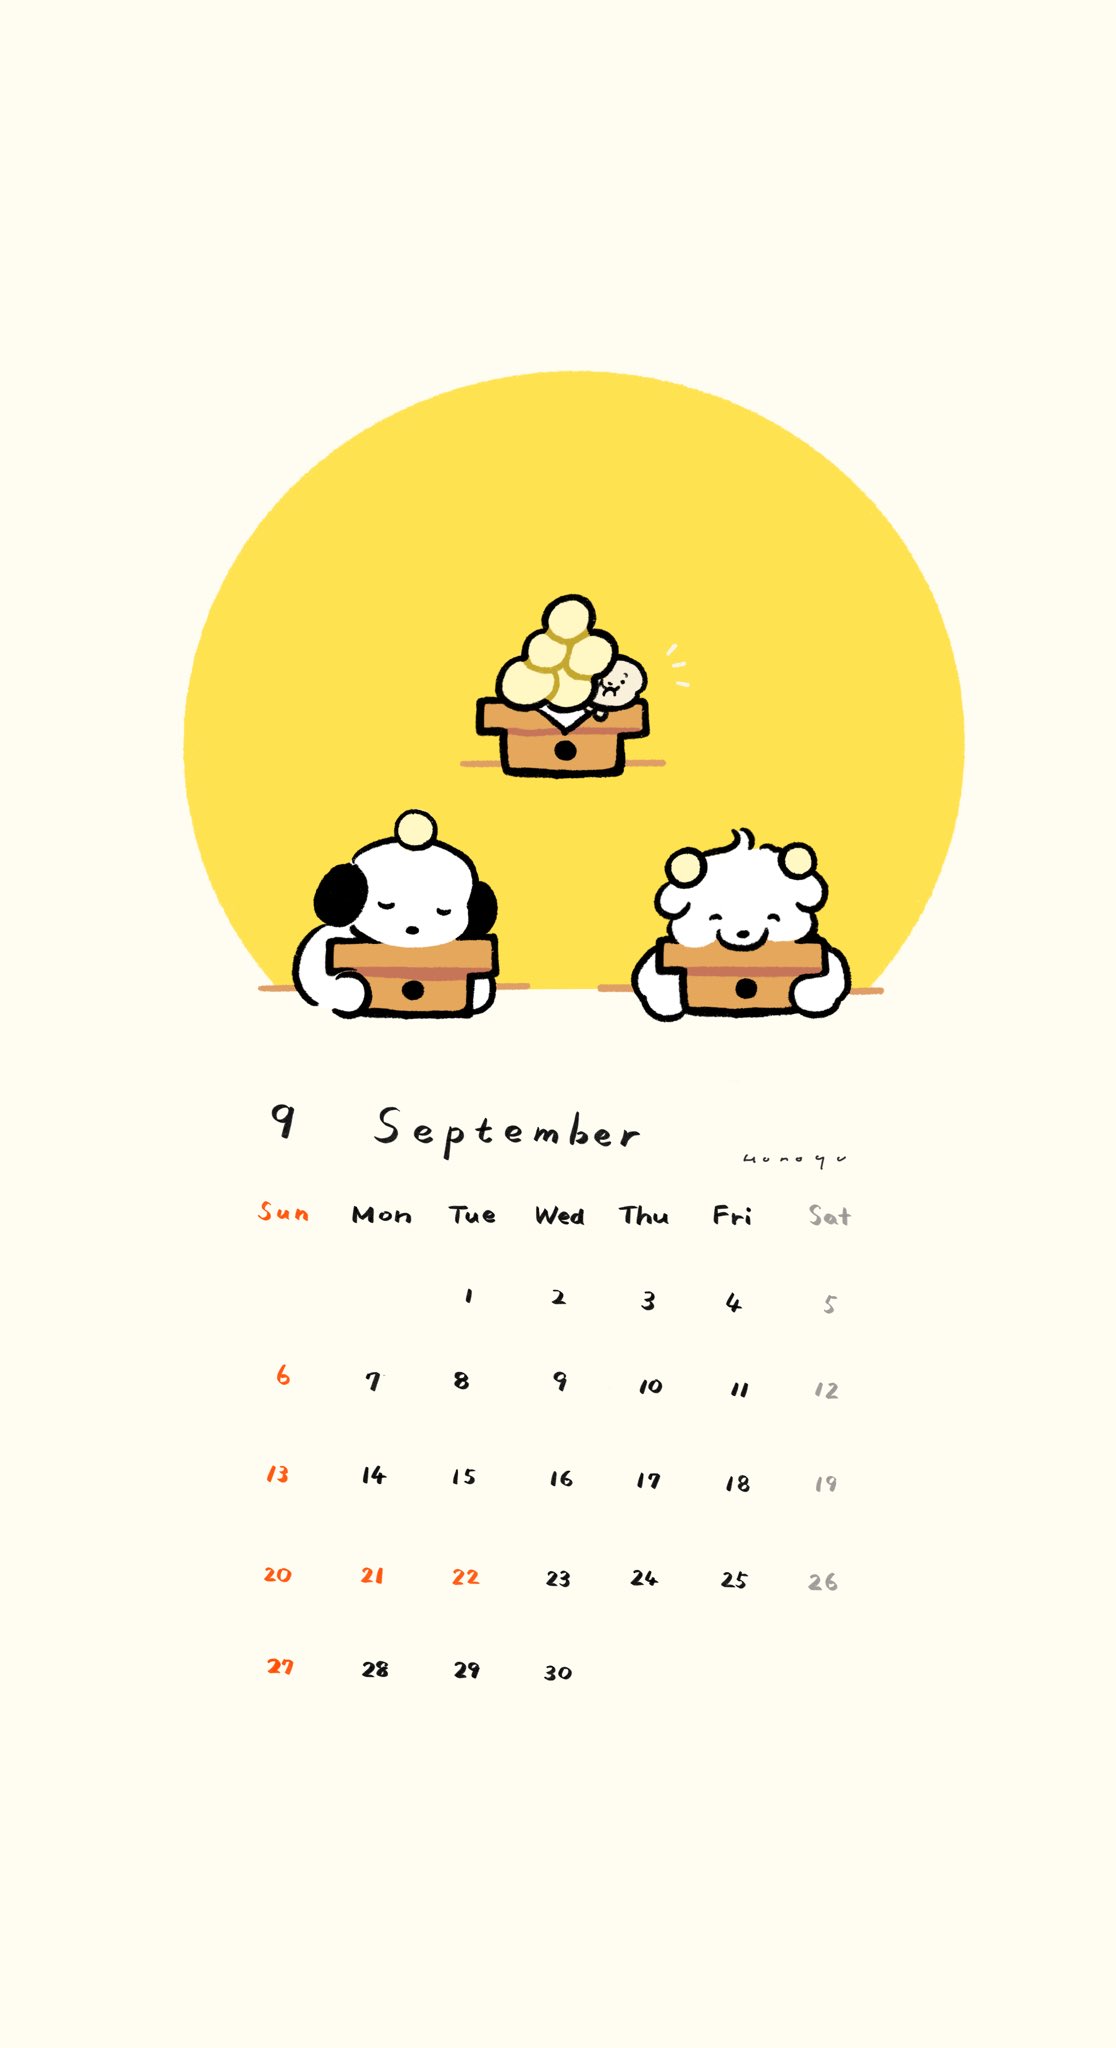 穂の湯 9月のカレンダーをつくりました だれが1番お月見団子になりきれているか 私的利用の範囲でお使いいただければ幸いです T Co N1sjrpw4xj Twitter